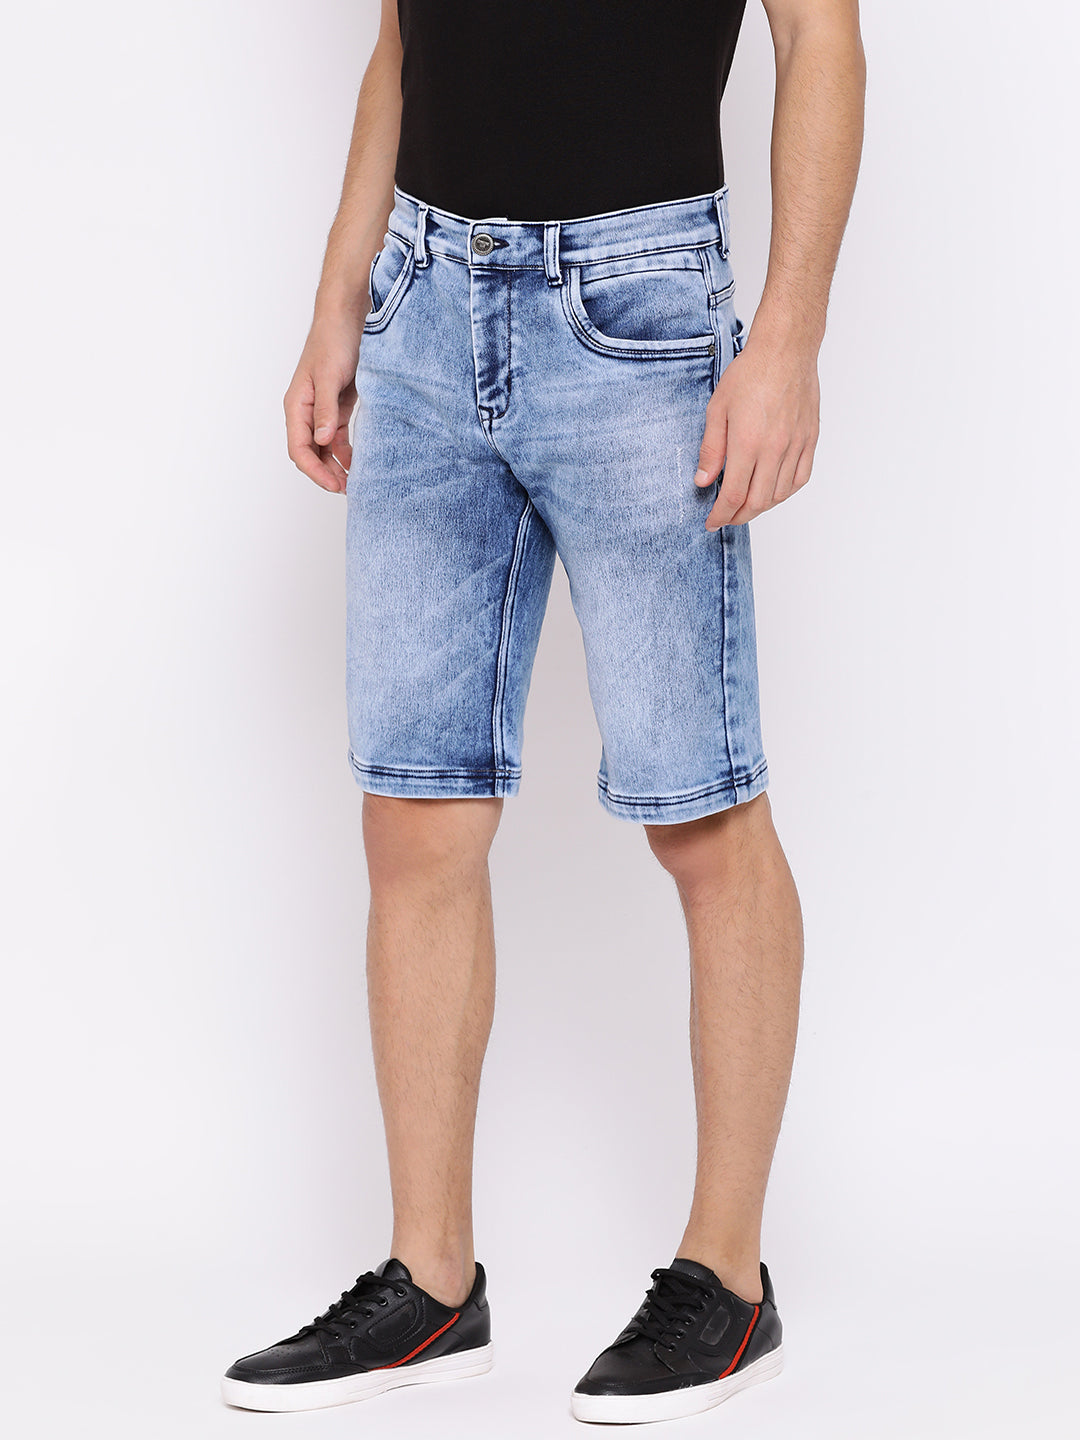 Slim Fit Denim shorts - Men Shorts